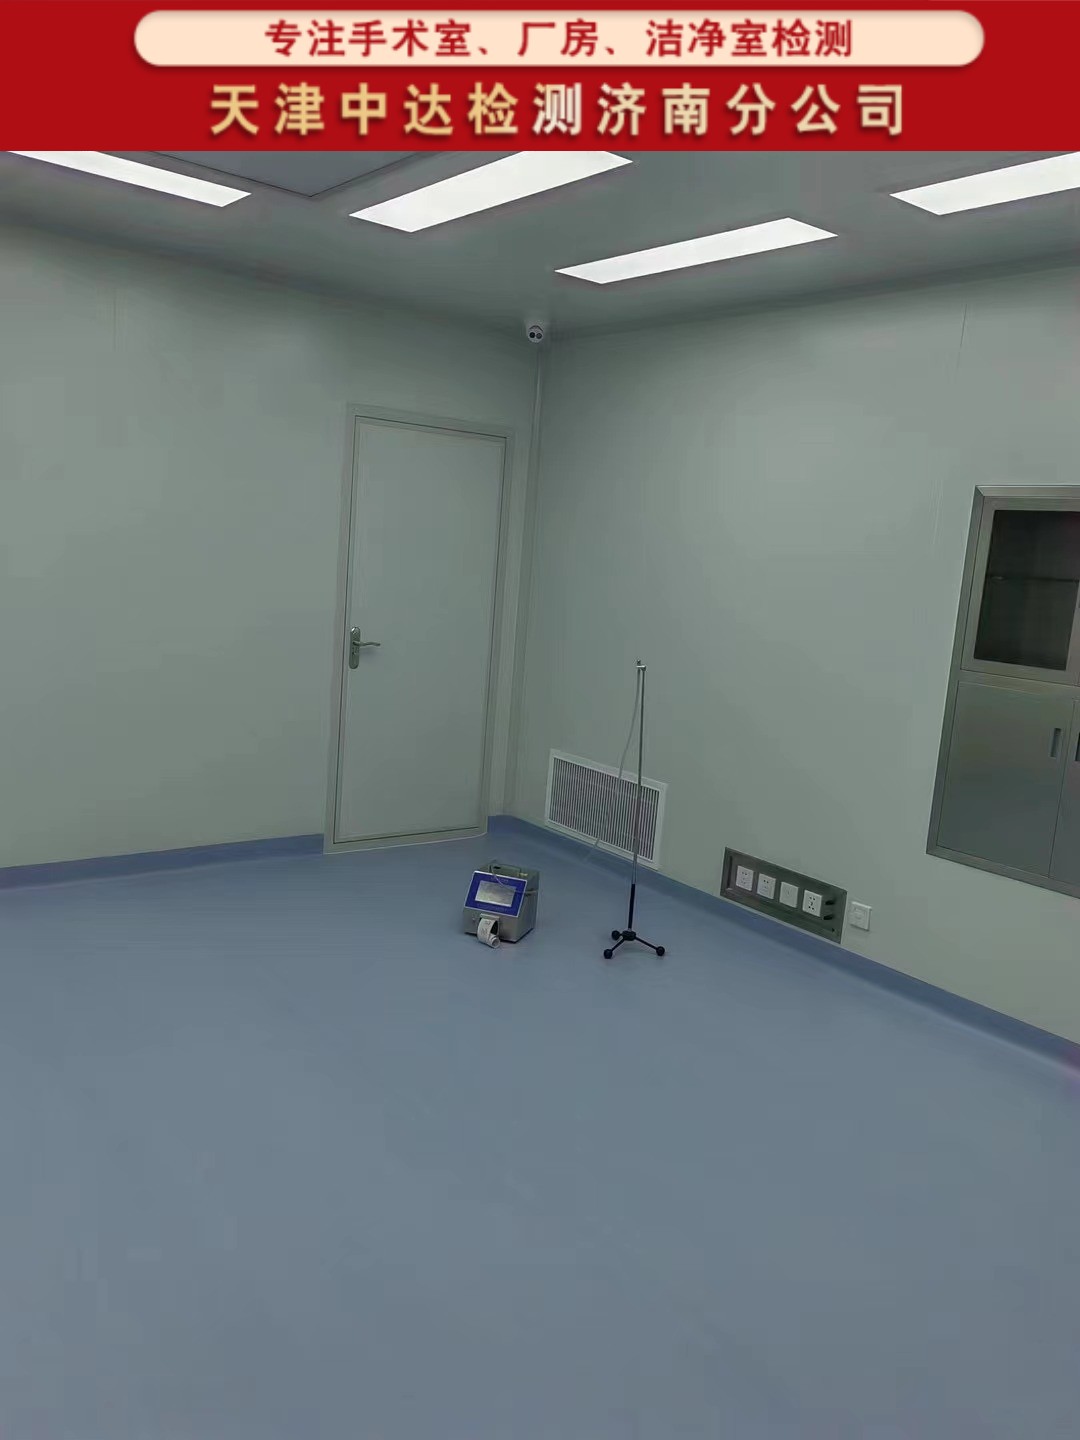 青岛崂山区洁净手术室空气质量检测方法-天津中达检测济南分公司